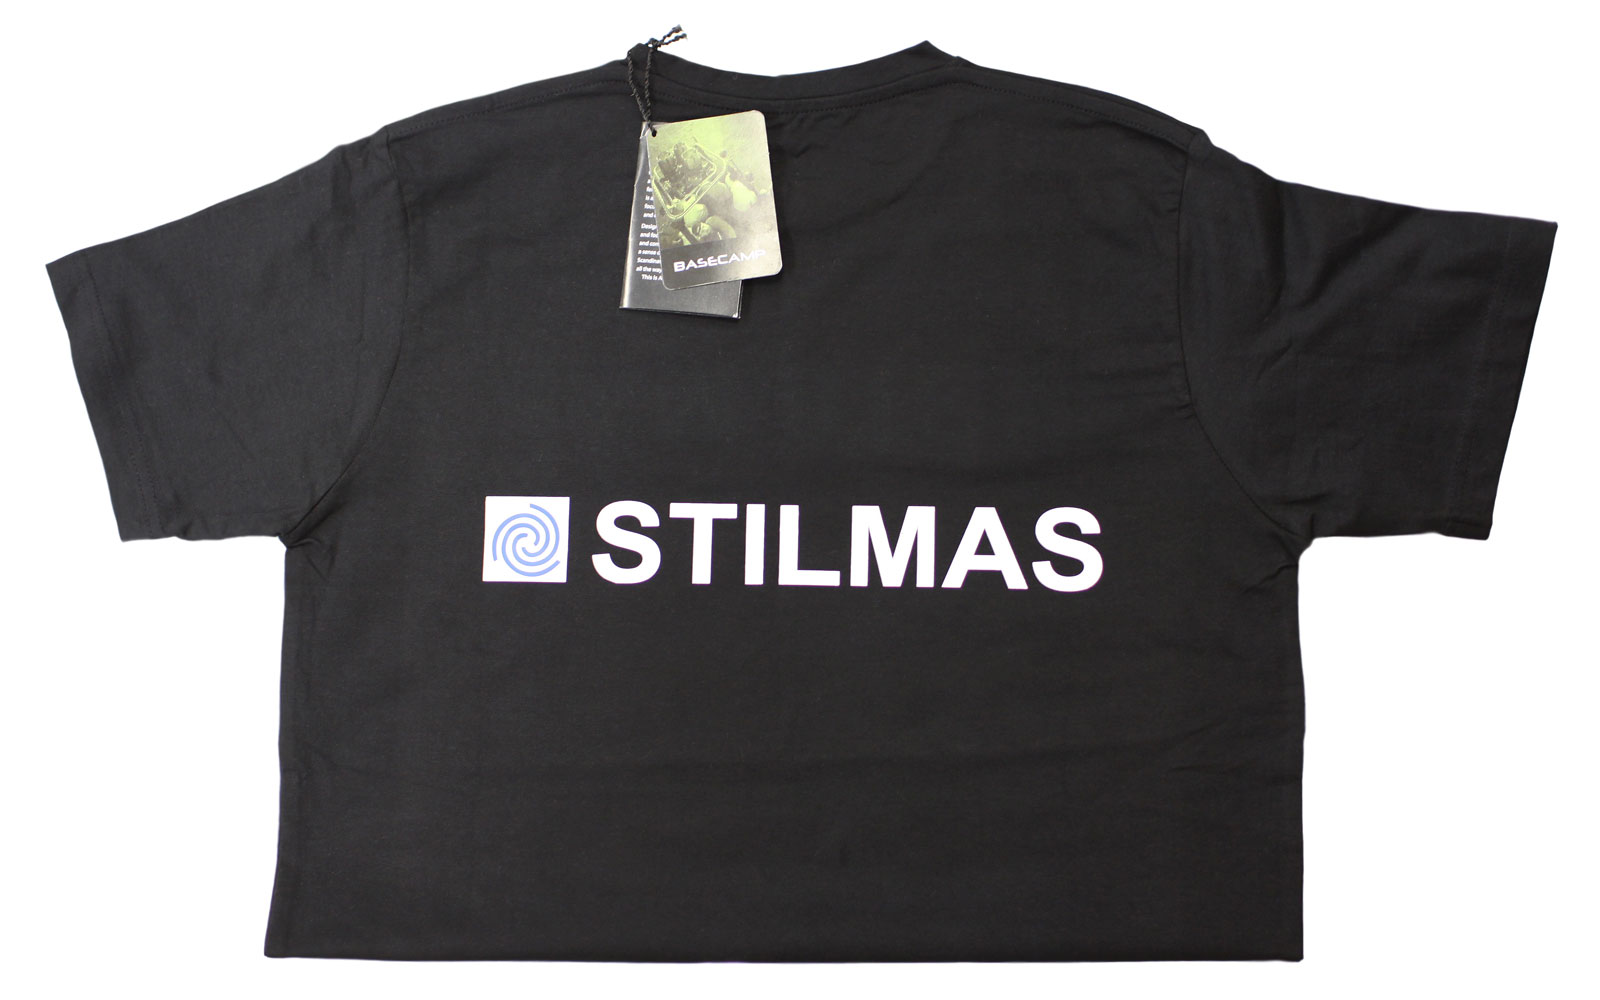 Логотип Stilmas на спине футболки ACODE - увеличенная фотография